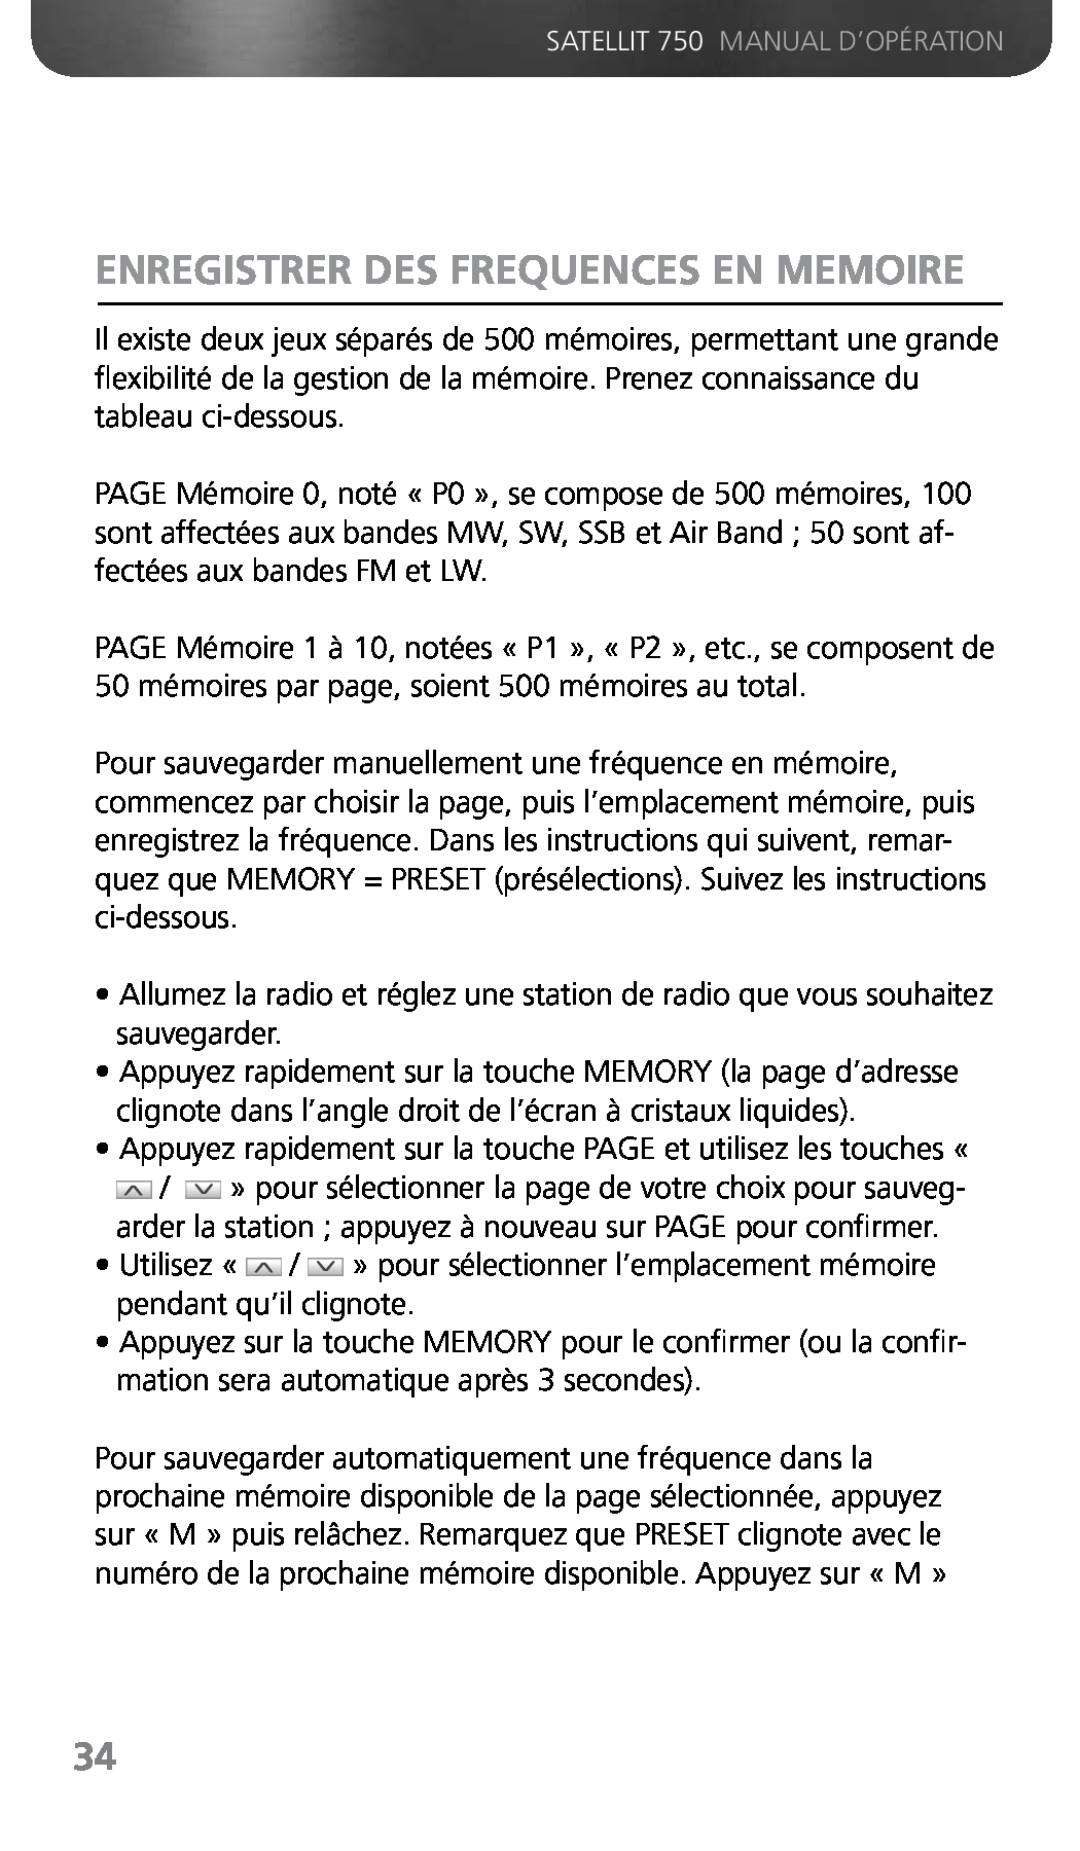 Grundig 750 owner manual Enregistrer Des Frequences En Memoire 